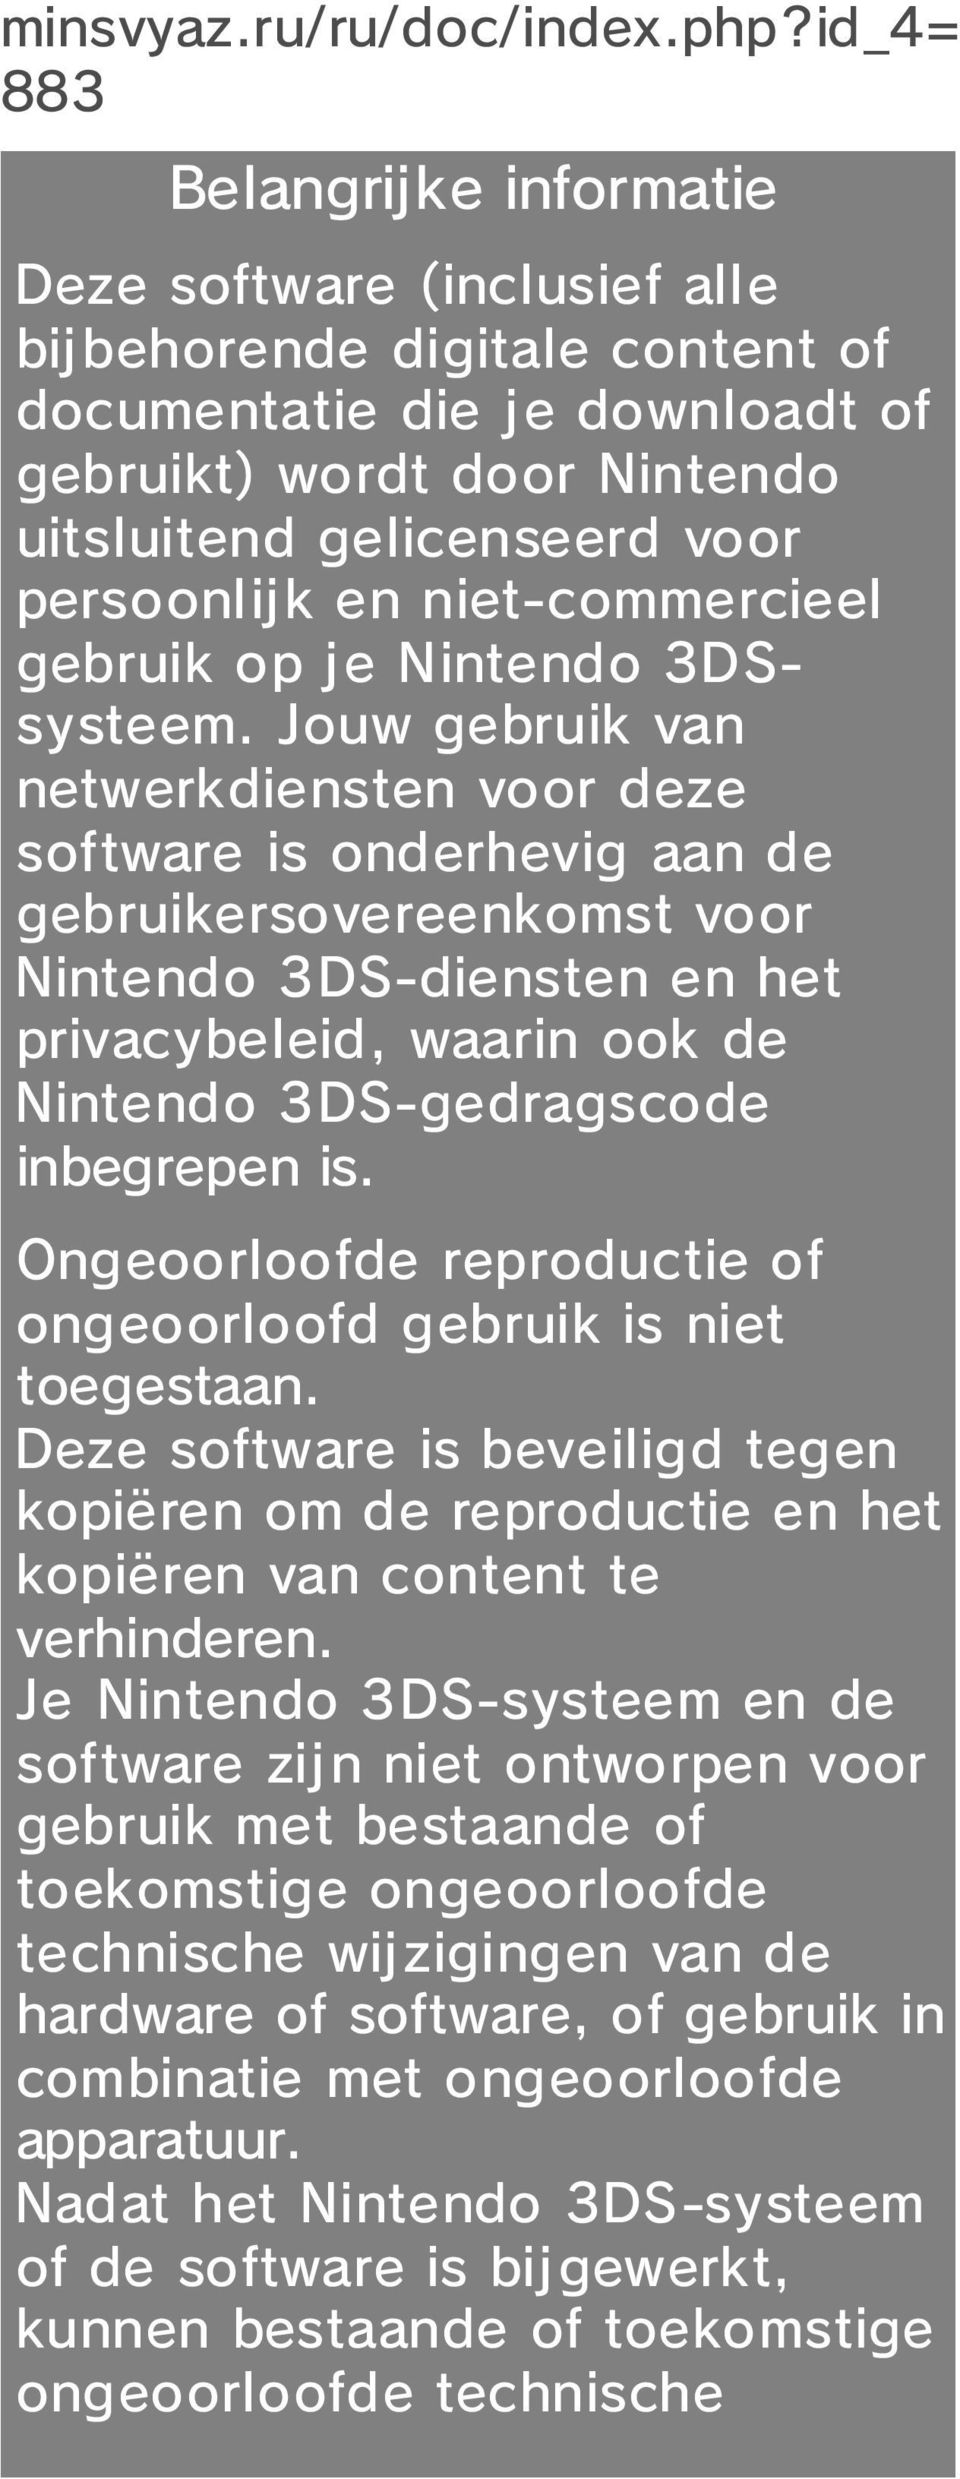 persoonlijk en niet-commercieel gebruik op je Nintendo 3DSsysteem.